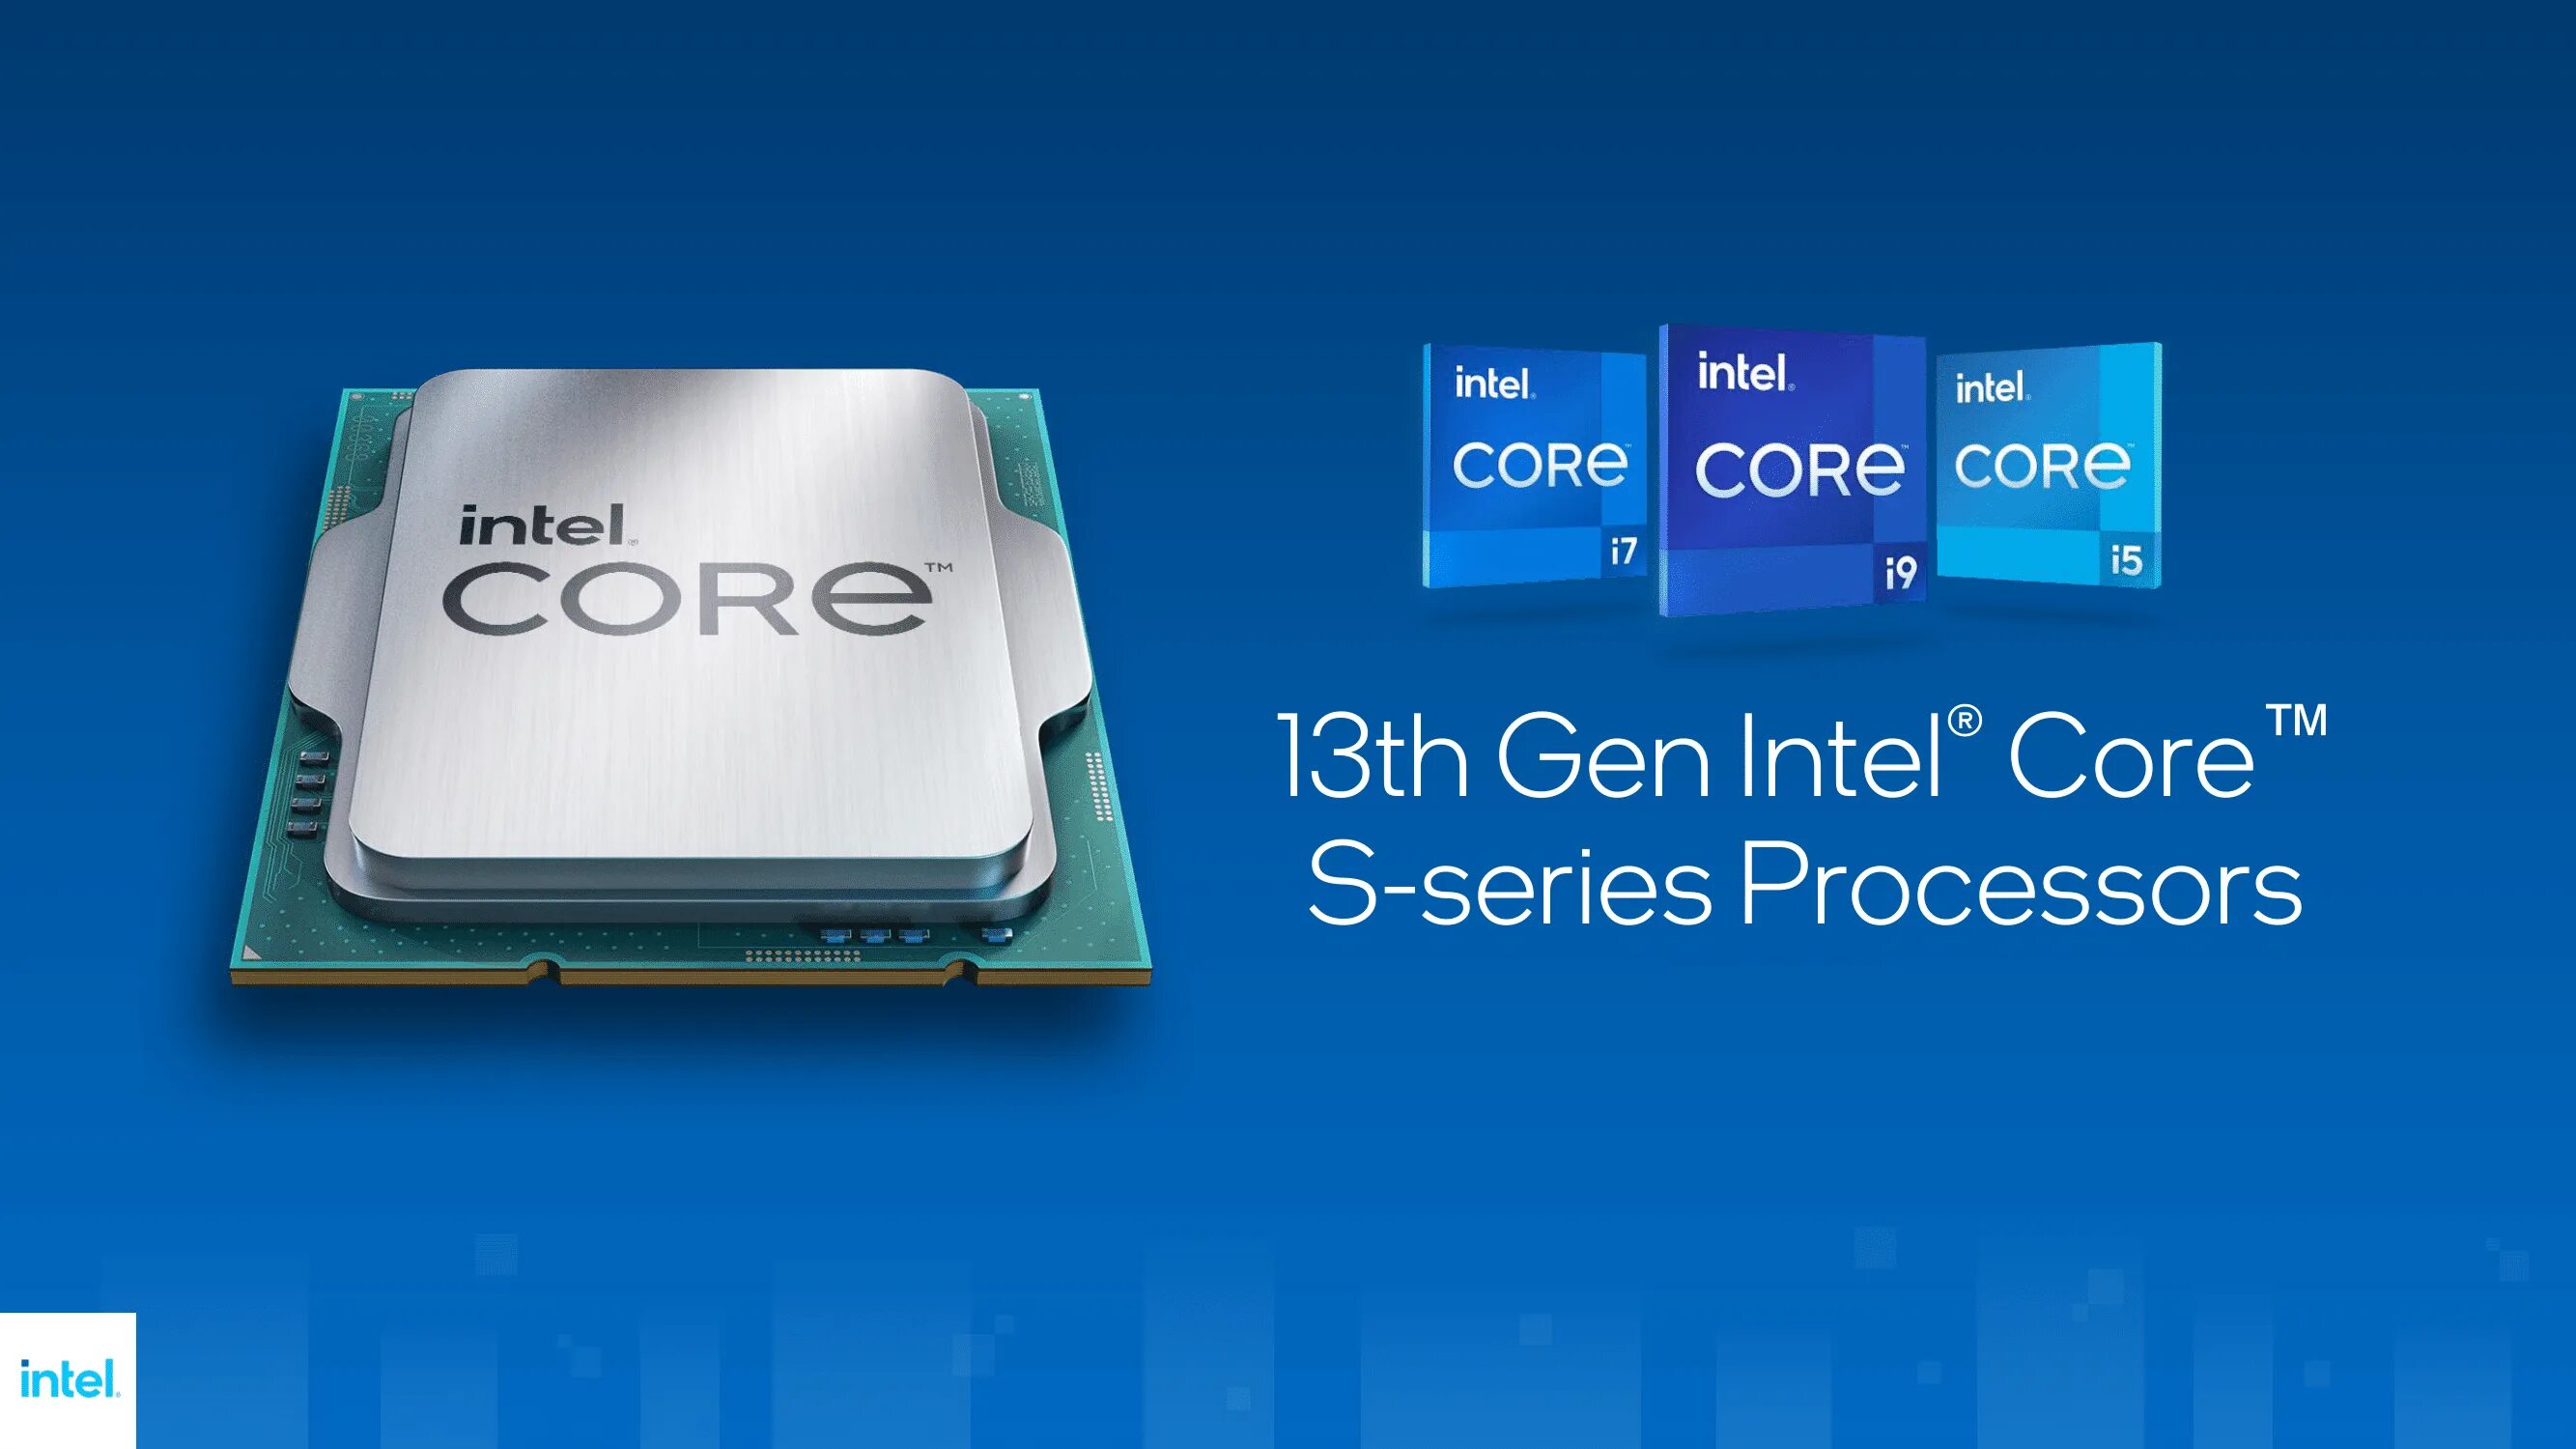 Интел 14 поколения